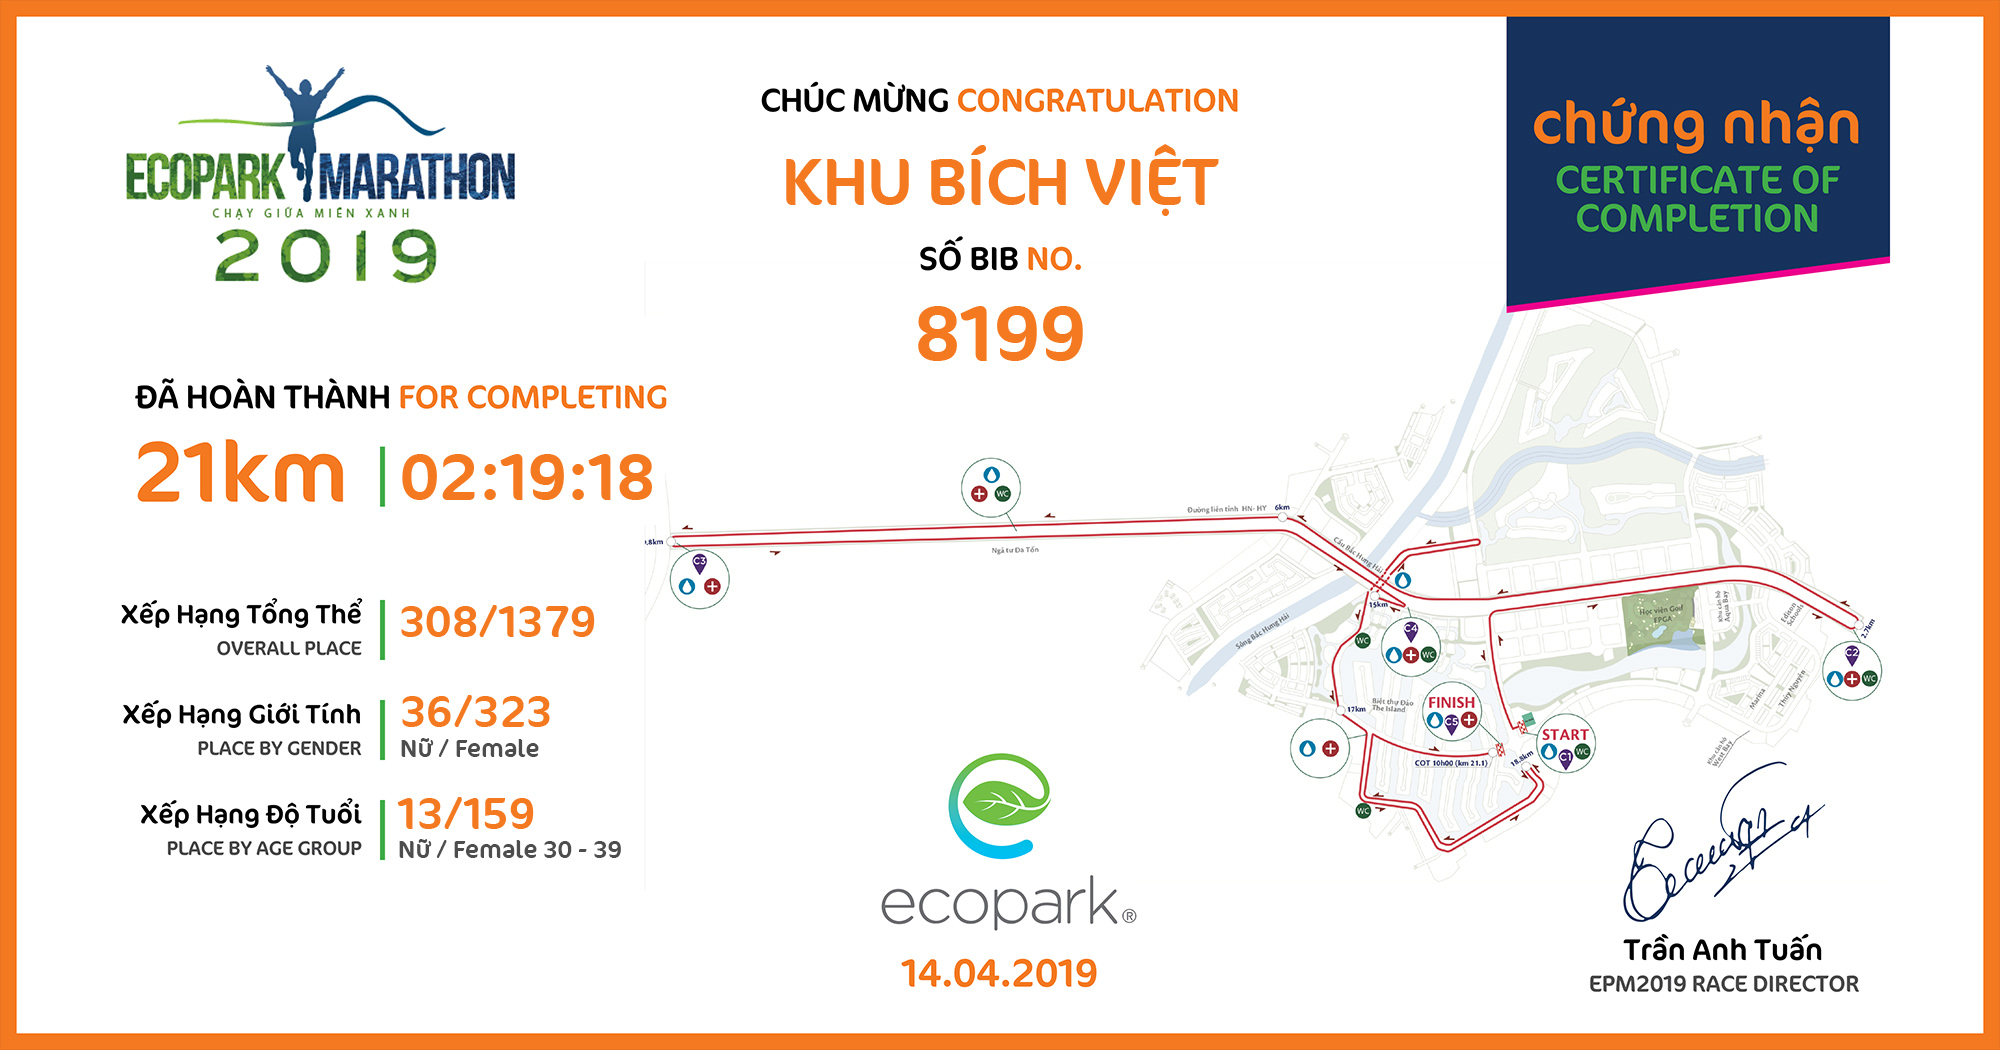 8199 - Khu Bích Việt